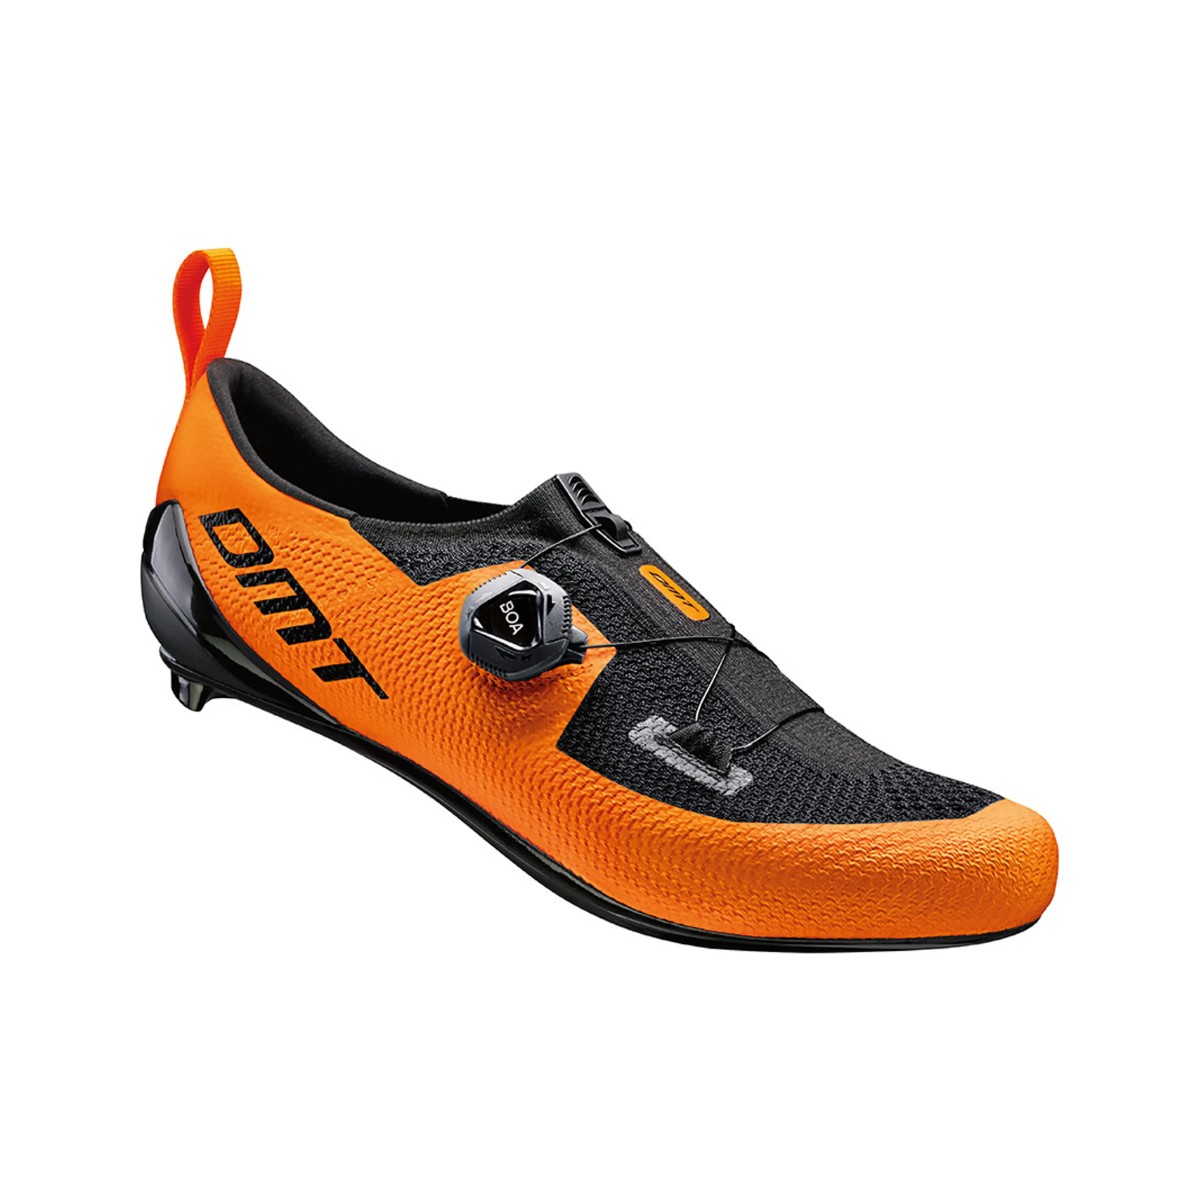 Es war günstig Kaufen-Schuhe DMT KT1 Orange Schwarz, Größe 42 - EUR. Schuhe DMT KT1 Orange Schwarz, Größe 42 - EUR <![CDATA[DMT KT1 Schuhe Orange Schwarz
 Die Konstruktion des gewebten KT1-Schuhs eignet sich perfekt für Triathleten und bietet außergewöhn